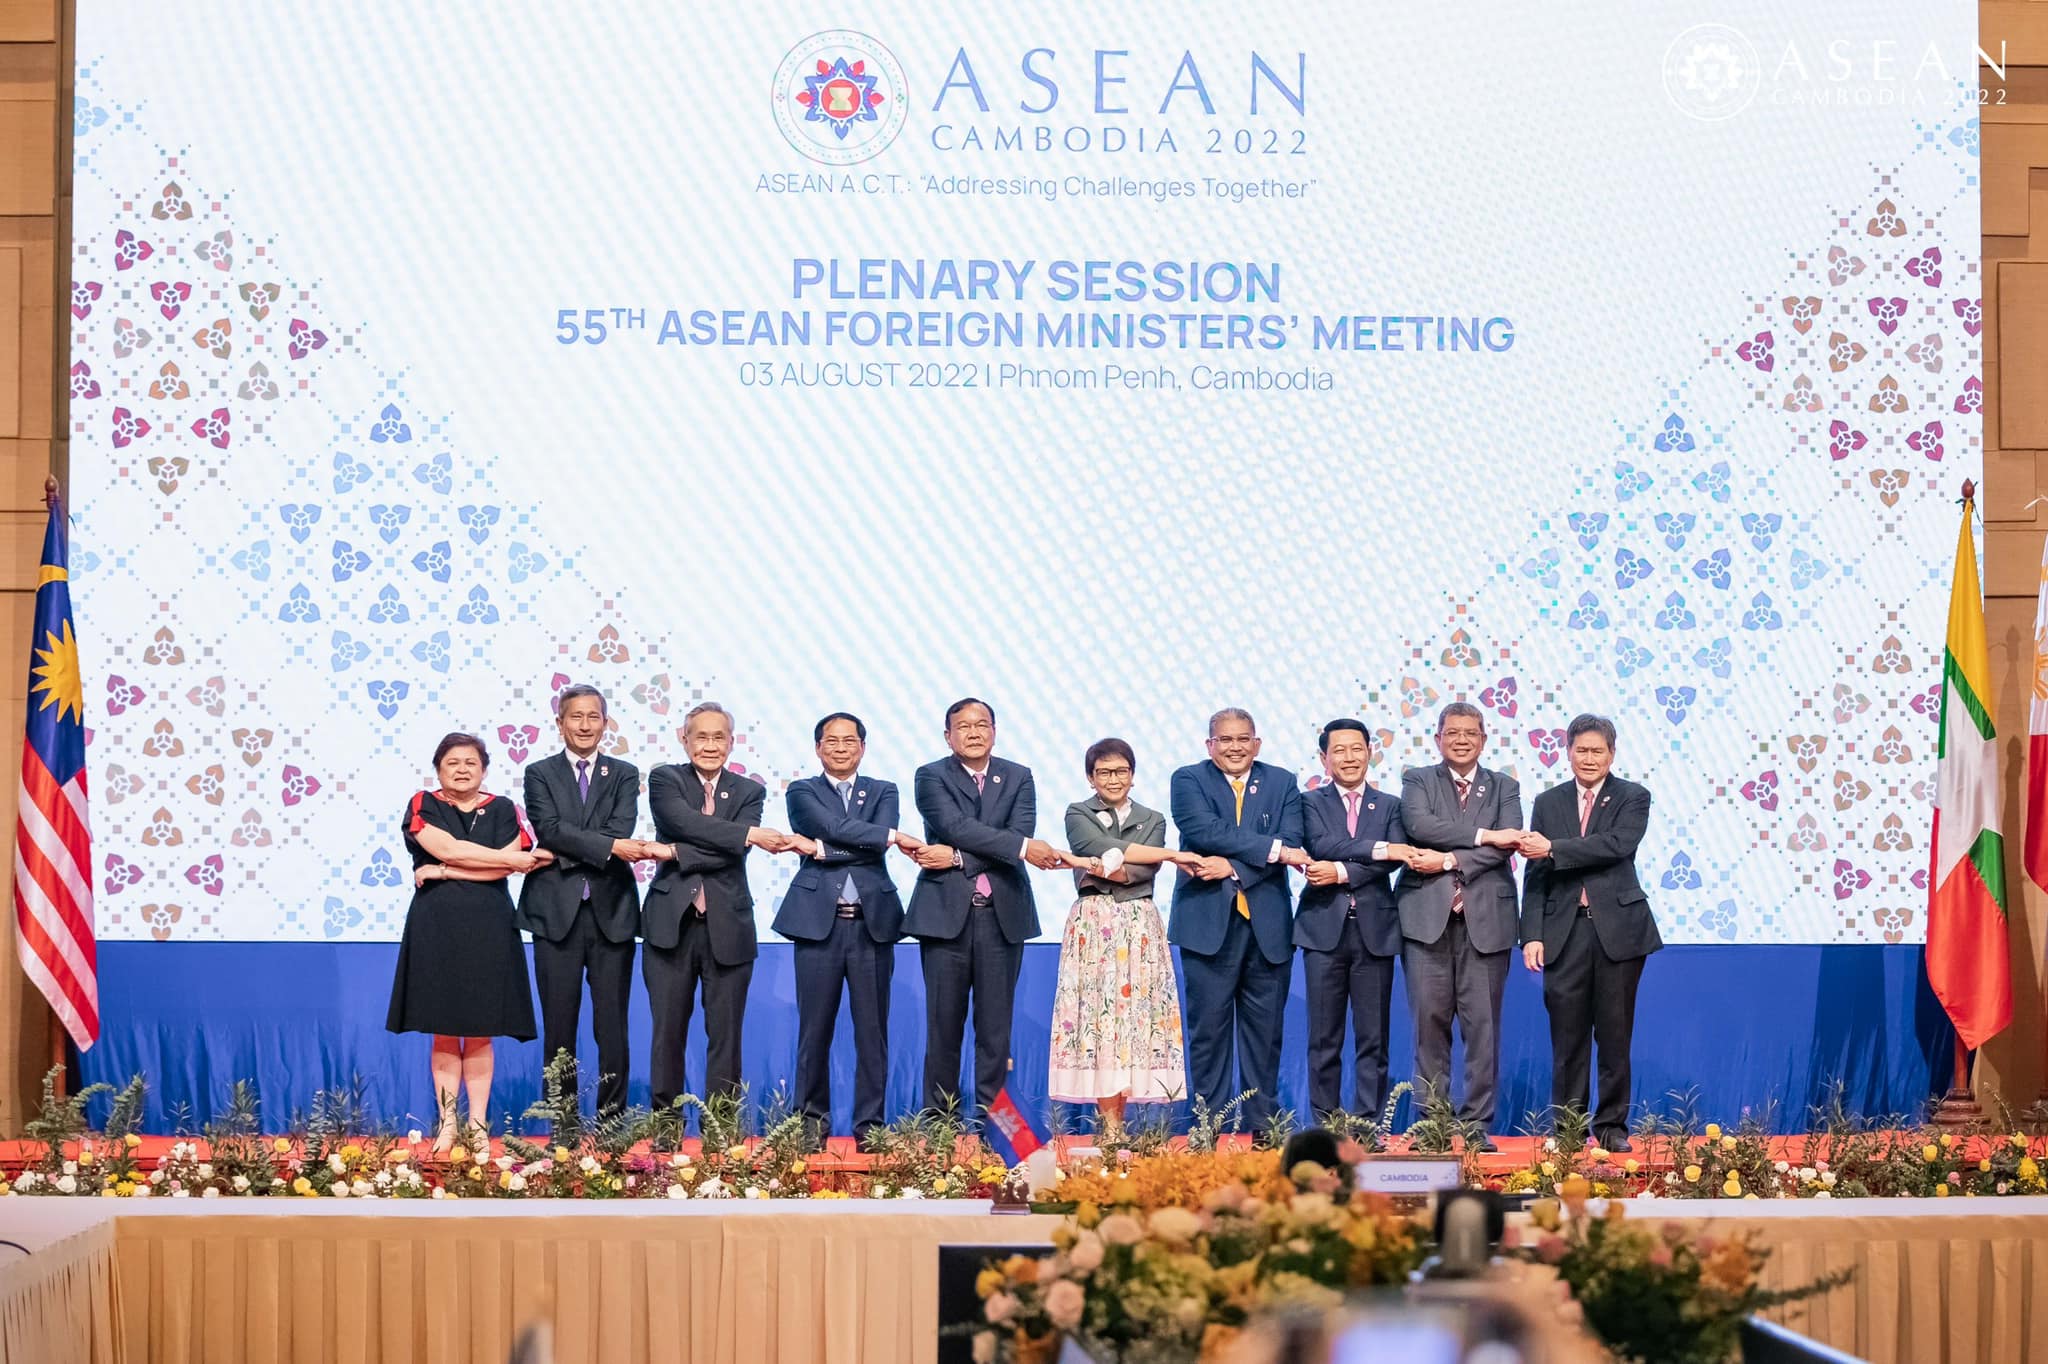 កិច្ចប្រជុំរដ្ឋមន្រ្តីការបរទេសអាស៊ាននៅក្នុងខែសីហាកន្លងទៅ។ រូបភាពយកពី ASEAN Cambodia 2022